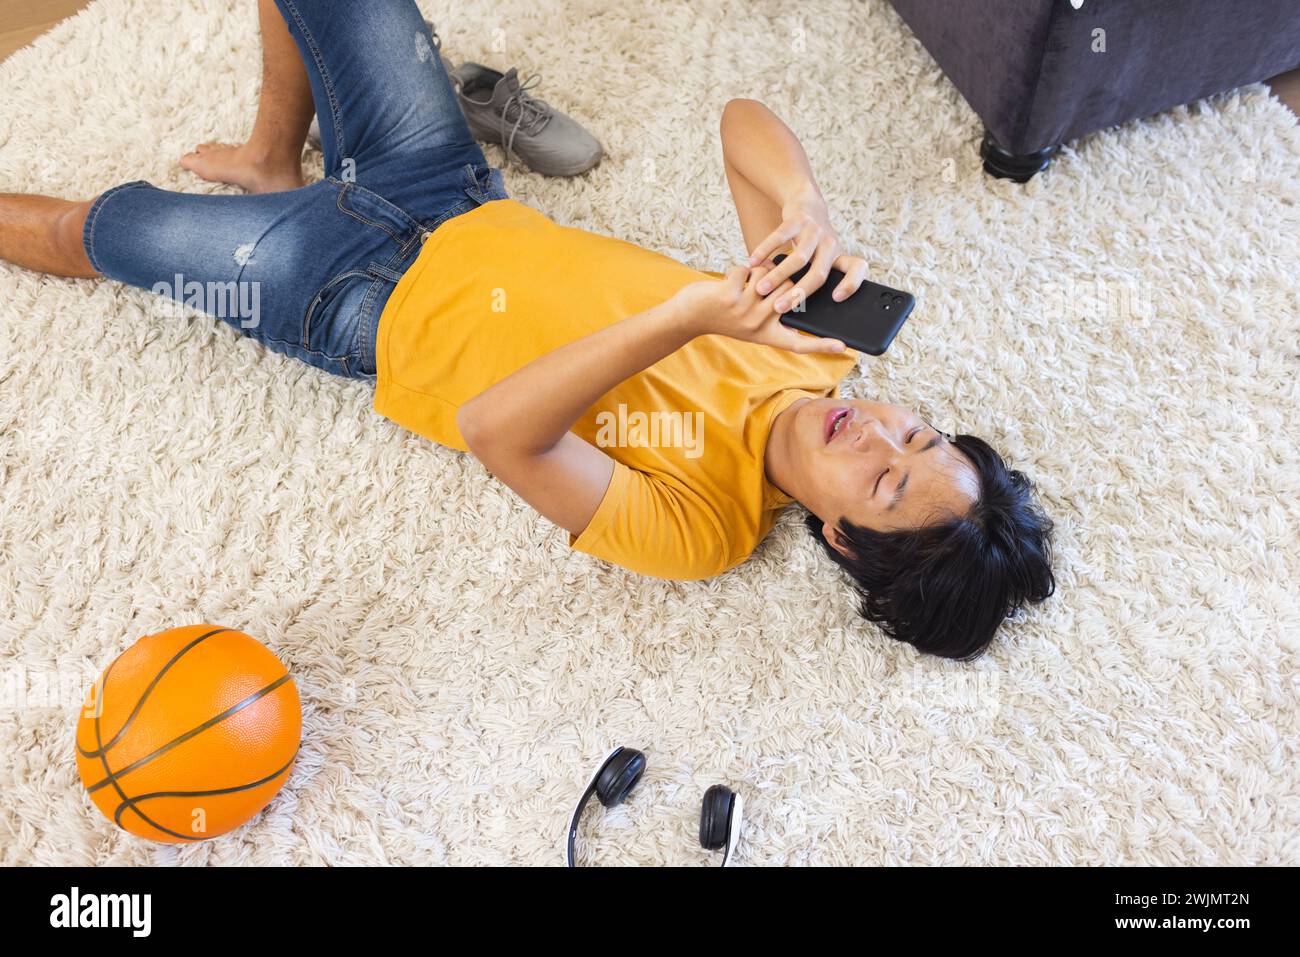 Adolescent asiatique allongé sur un tapis à la maison, en utilisant son smartphone Banque D'Images